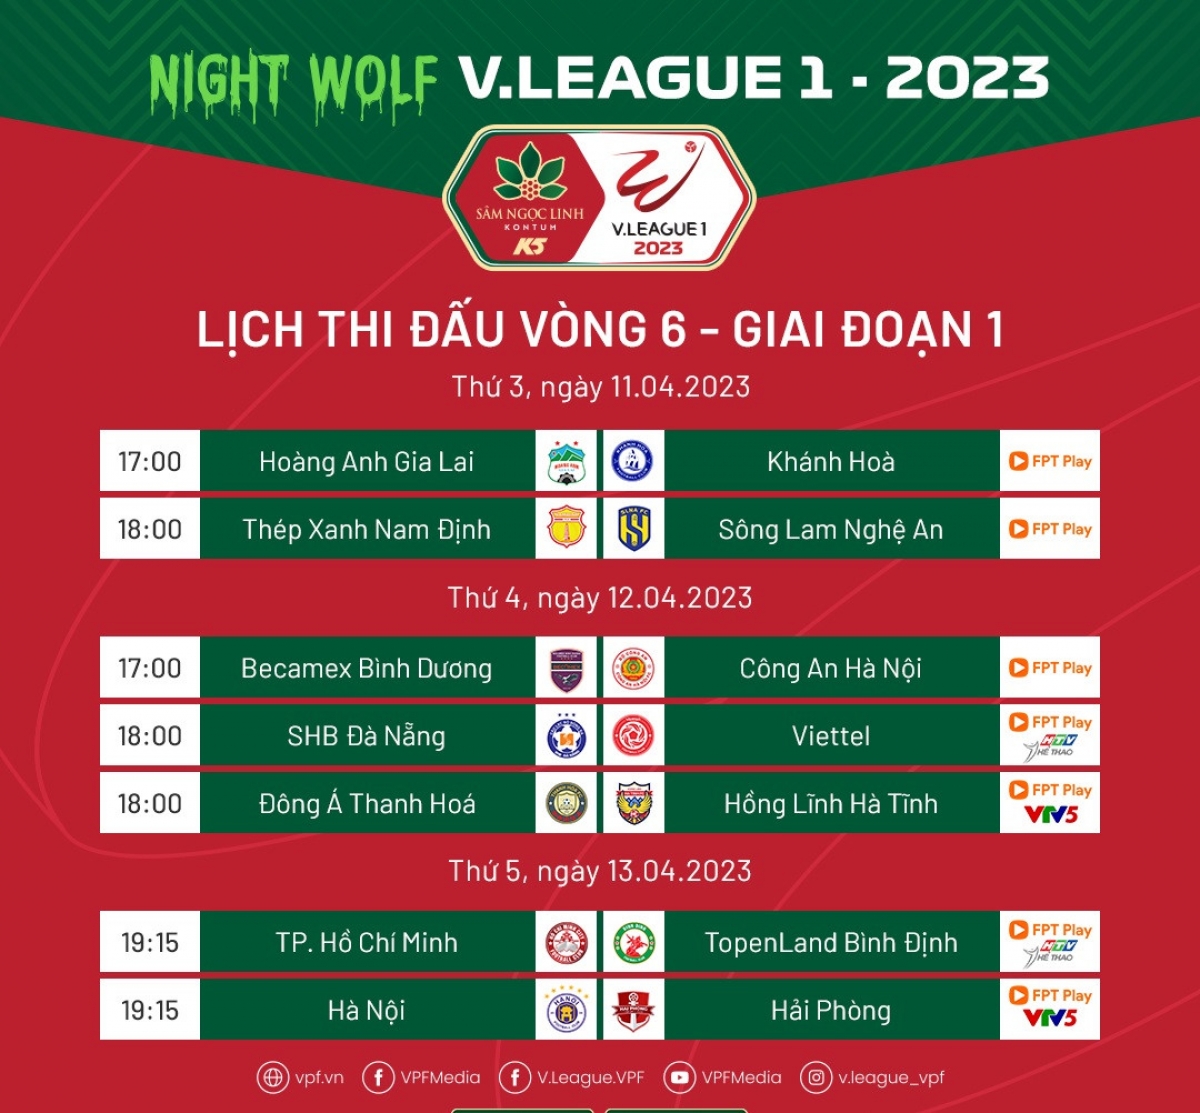                                          Lịch thi đấu vòng 6 Night Wolf V-League 1 2023